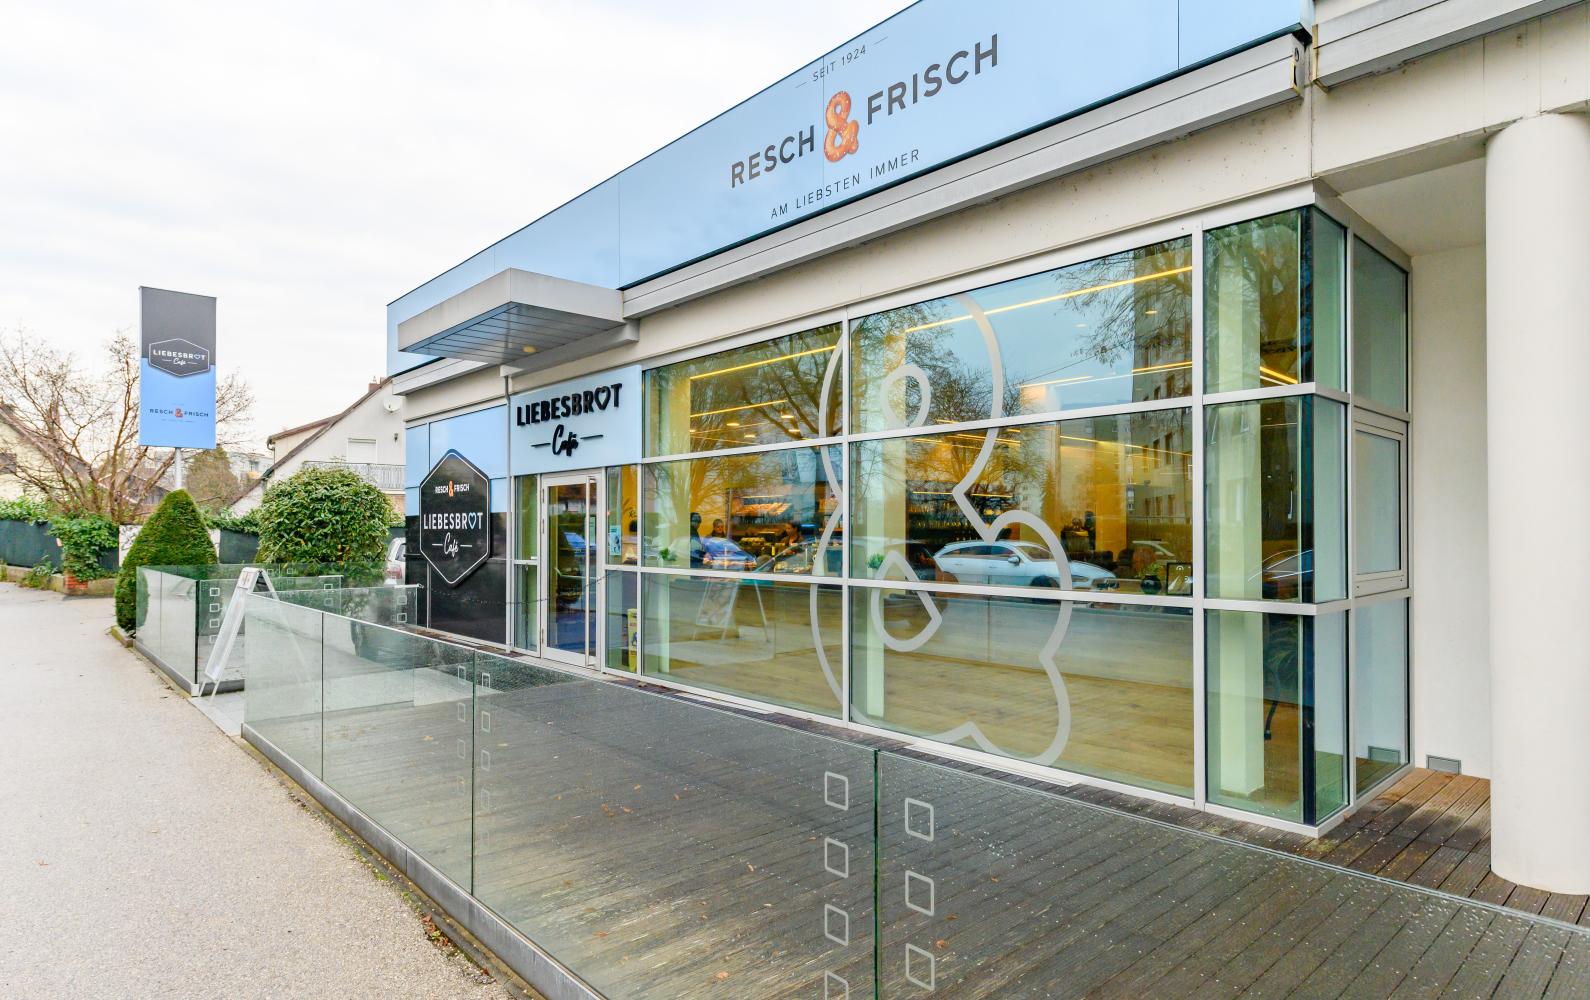 Resch&Frisch Filiale Wels Gartenstadt Liebesbrot Café Headerbild